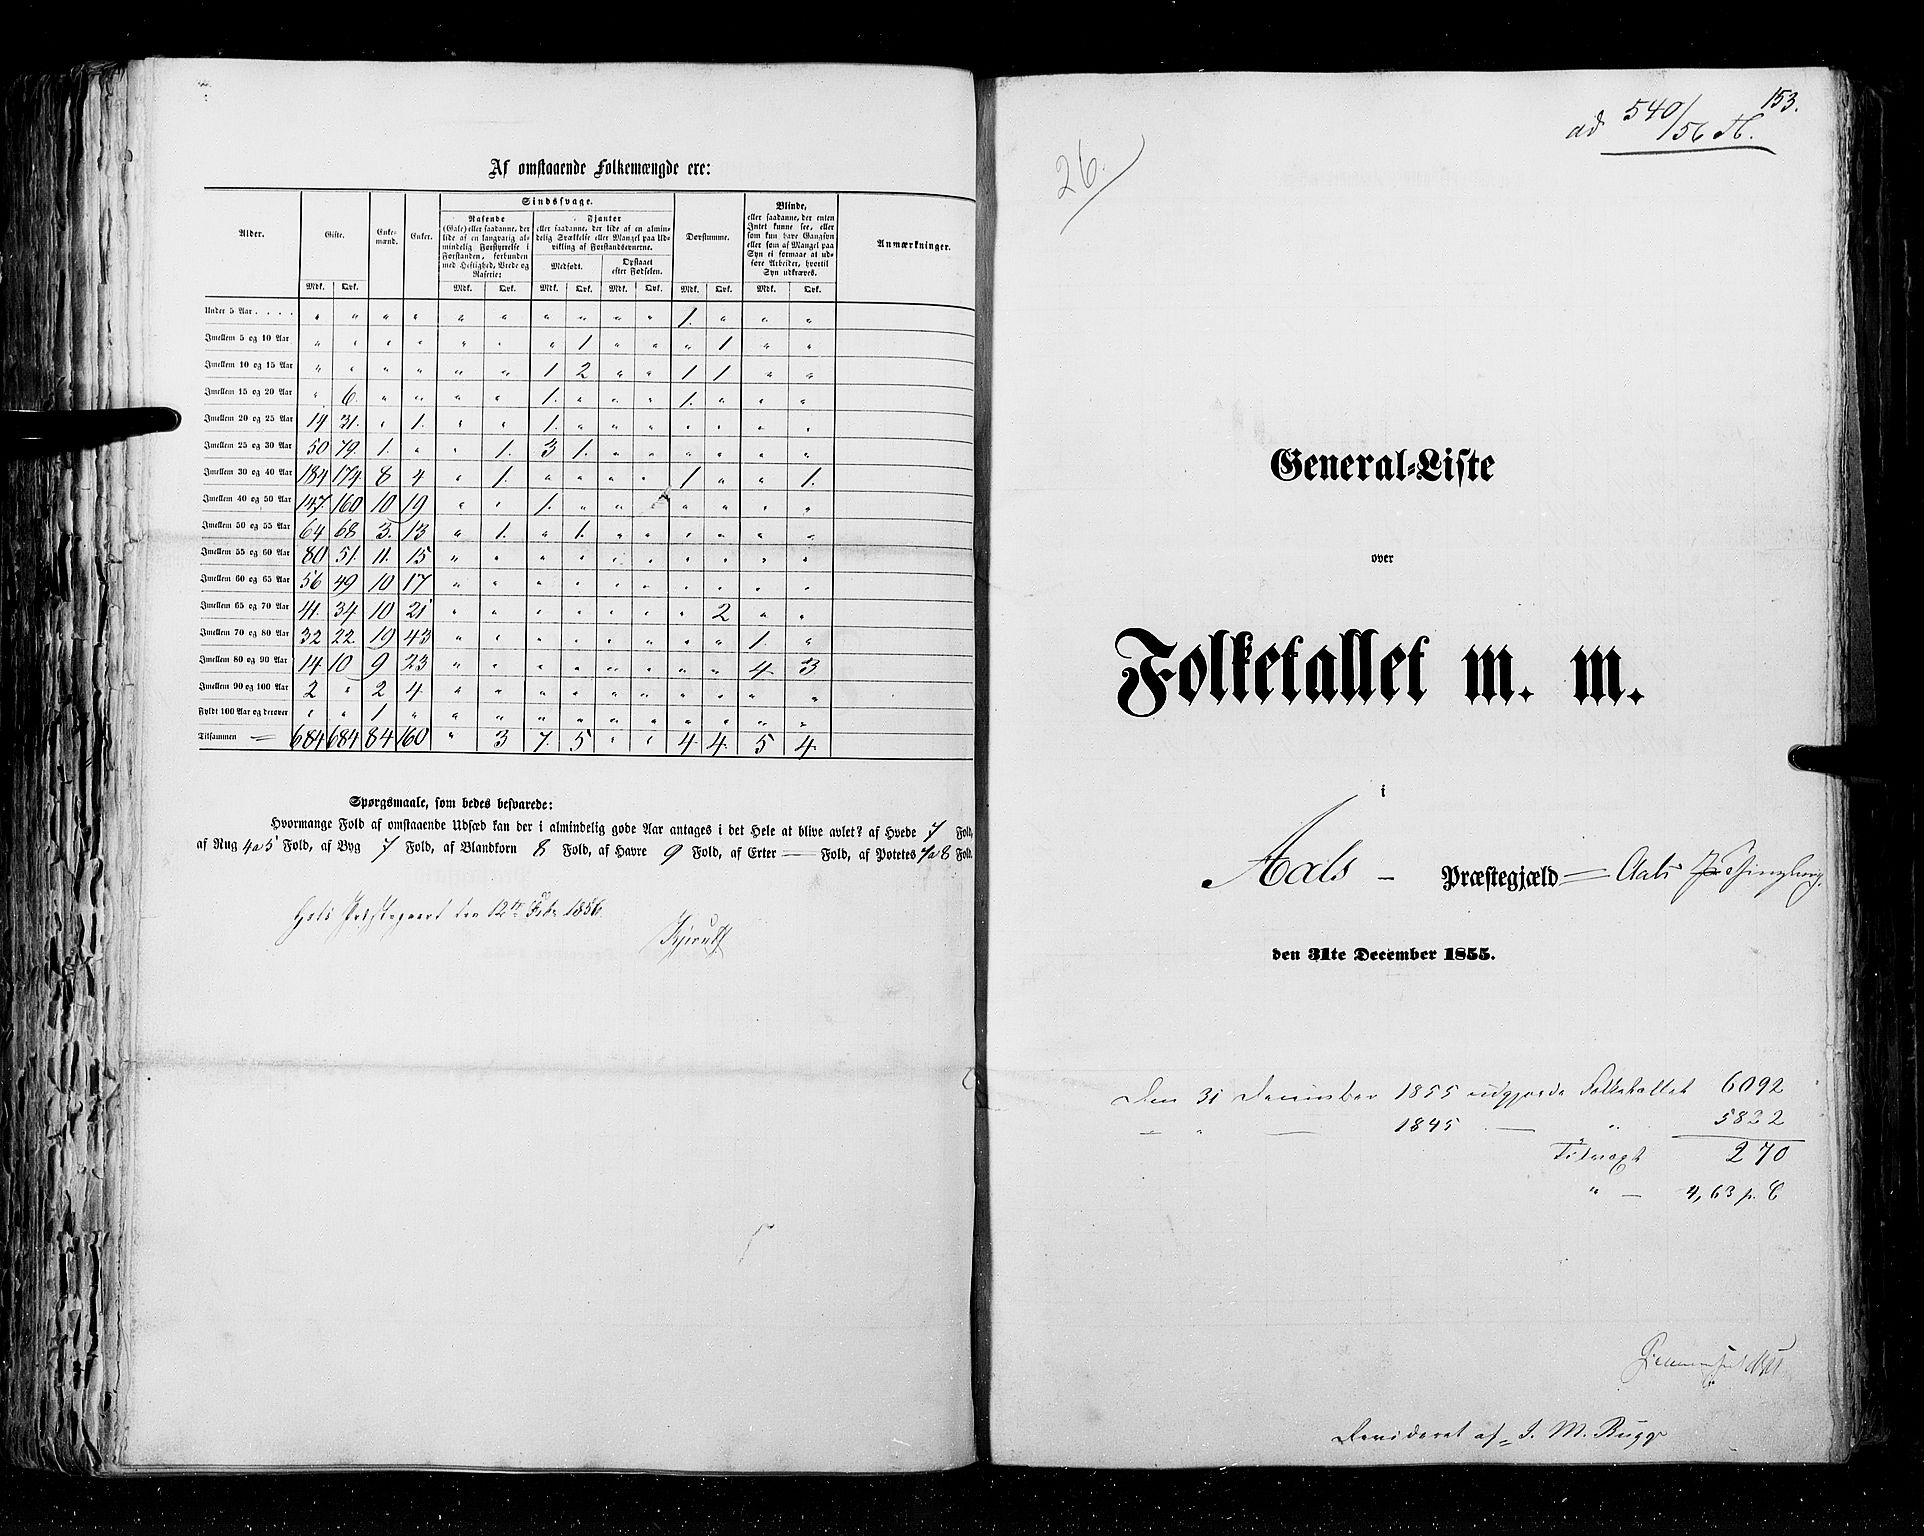 RA, Folketellingen 1855, bind 2: Kristians amt, Buskerud amt og Jarlsberg og Larvik amt, 1855, s. 153